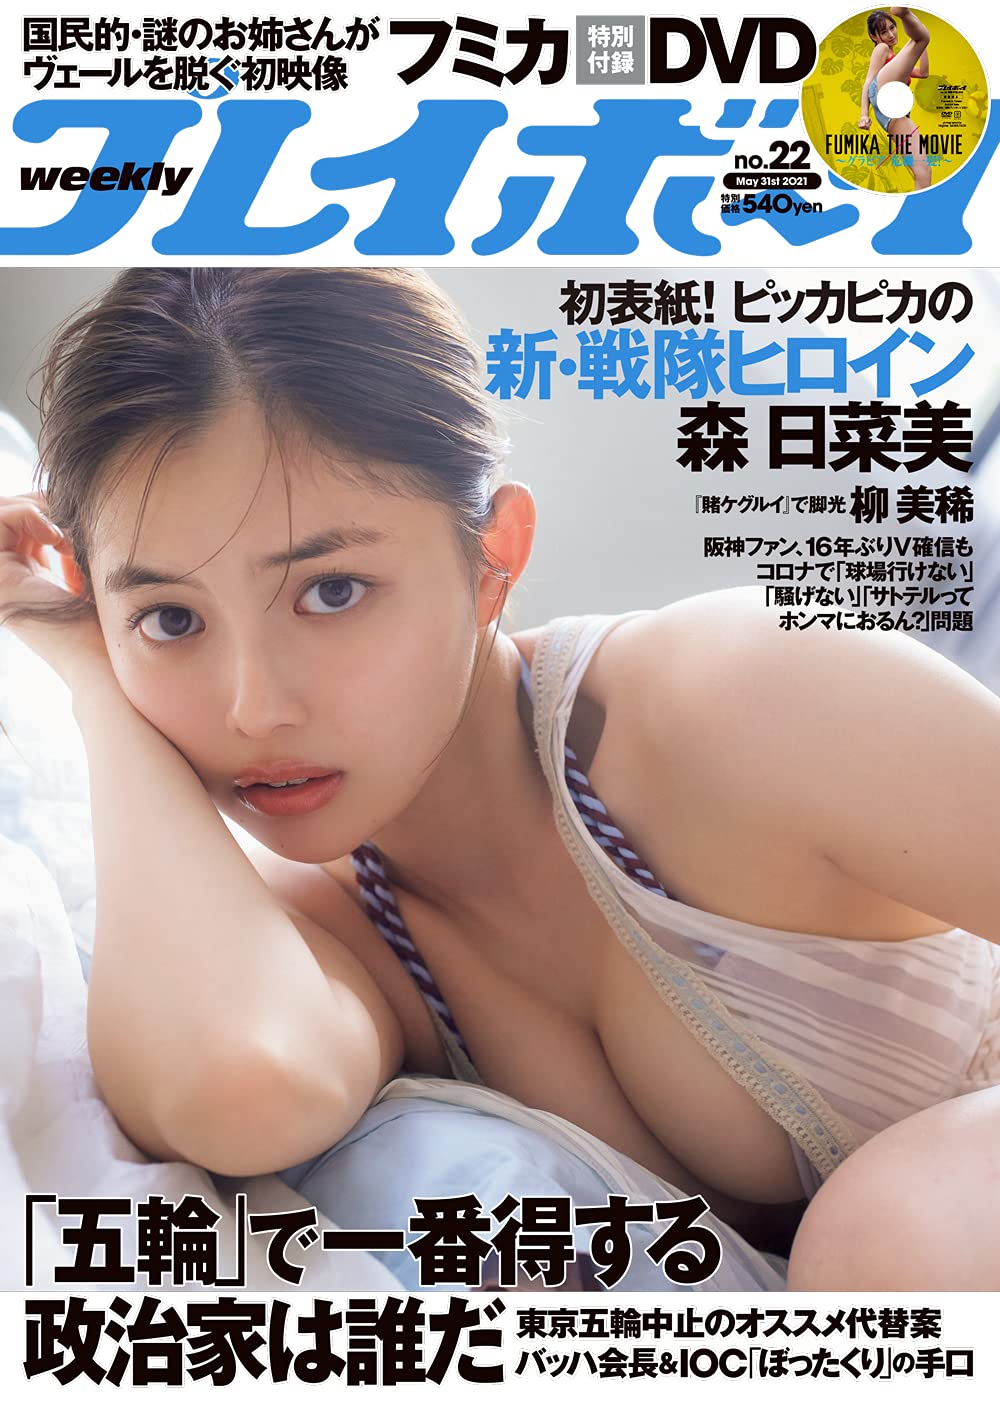  週刊プレイボーイ 2021年5月31日号 (No.22) 雑誌